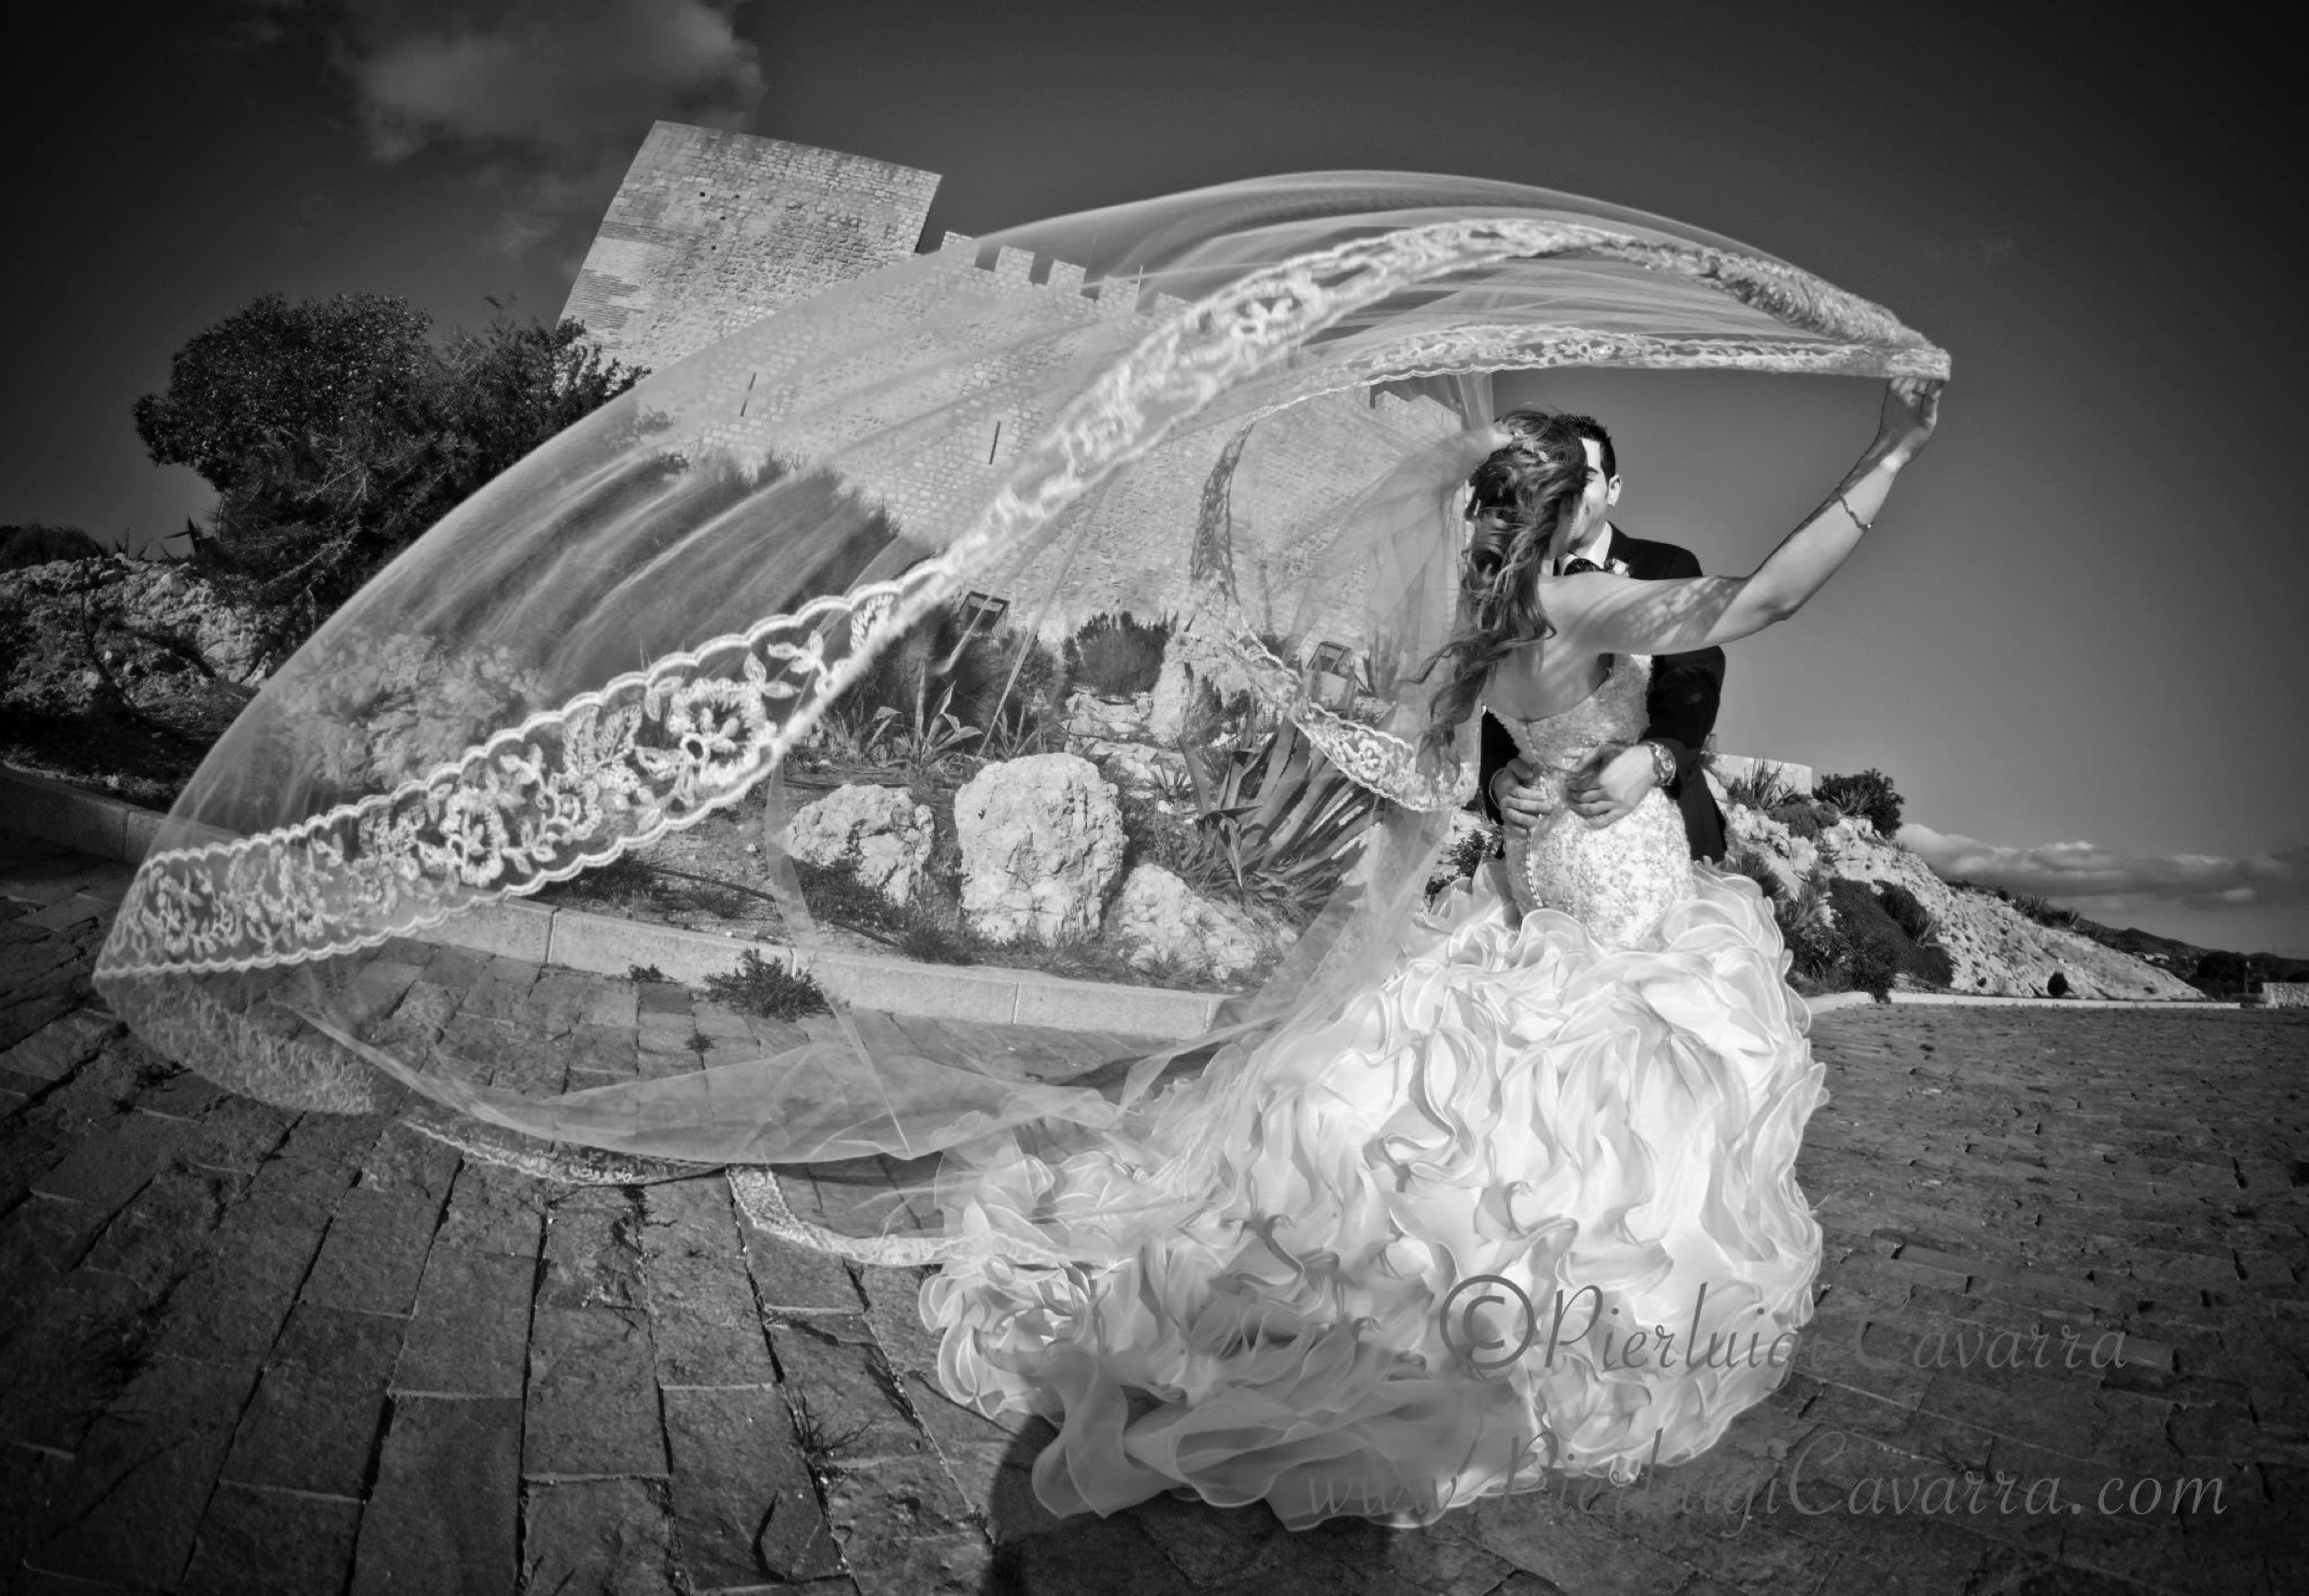 Pierluigi Cavarra - fotografo de bodas y eventos - wedding photographer costa blanca - ejemplo -27